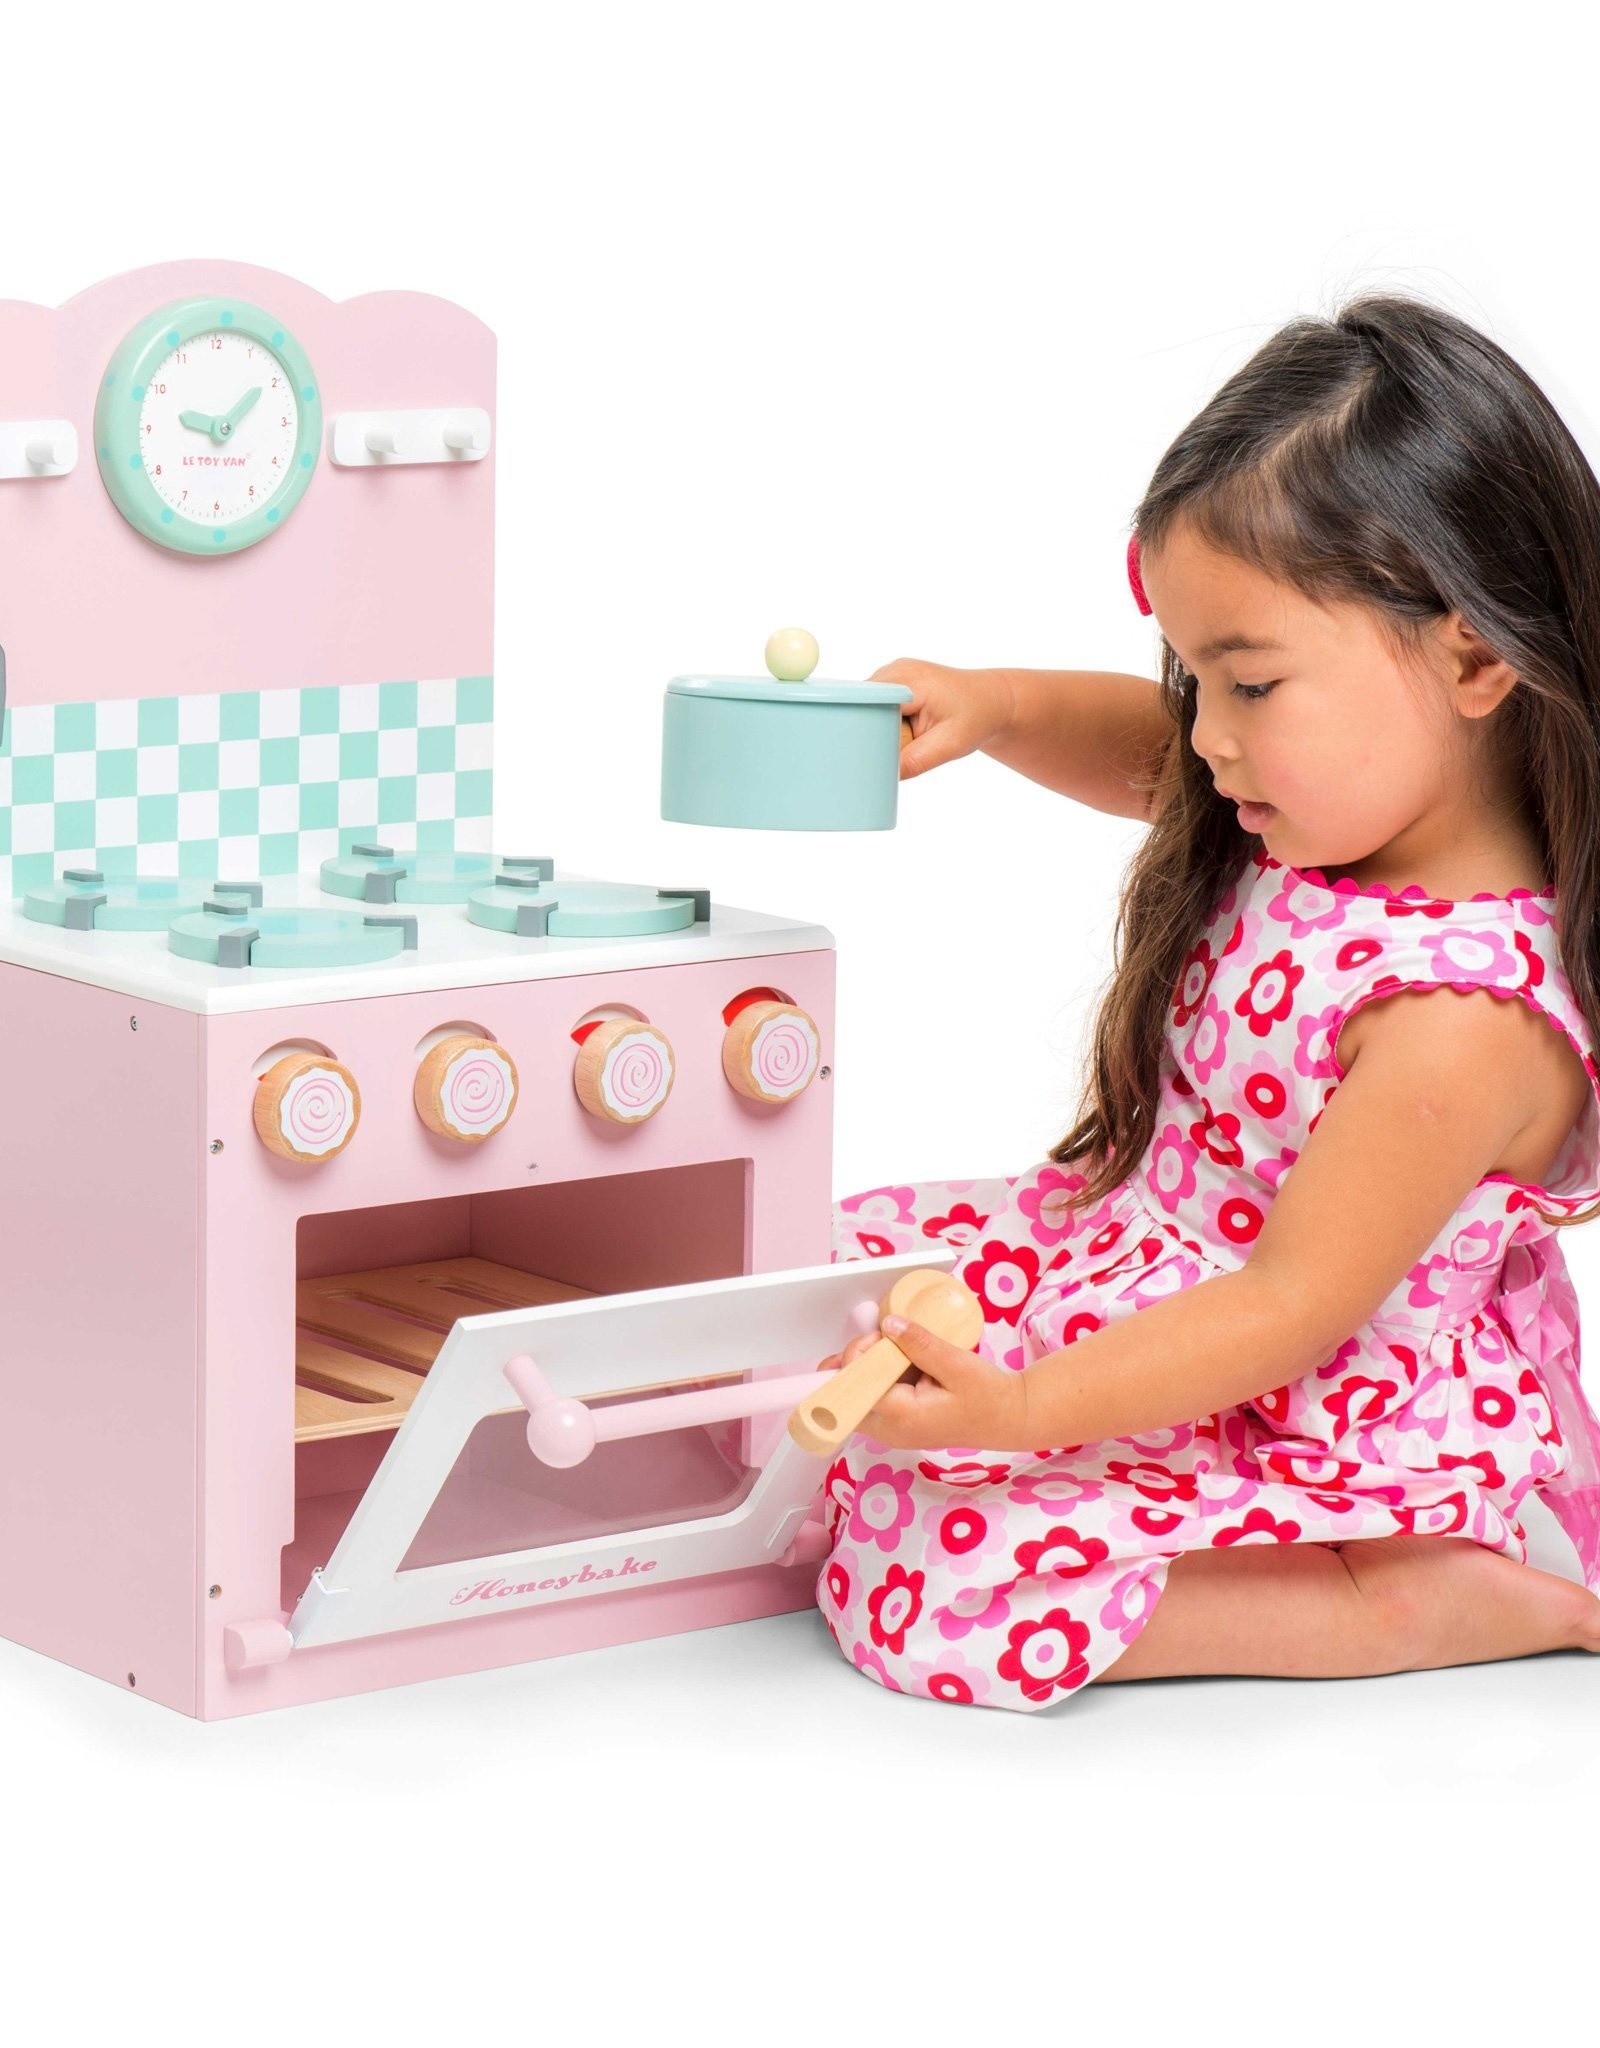 Le Toy Van Oven & Hob Set